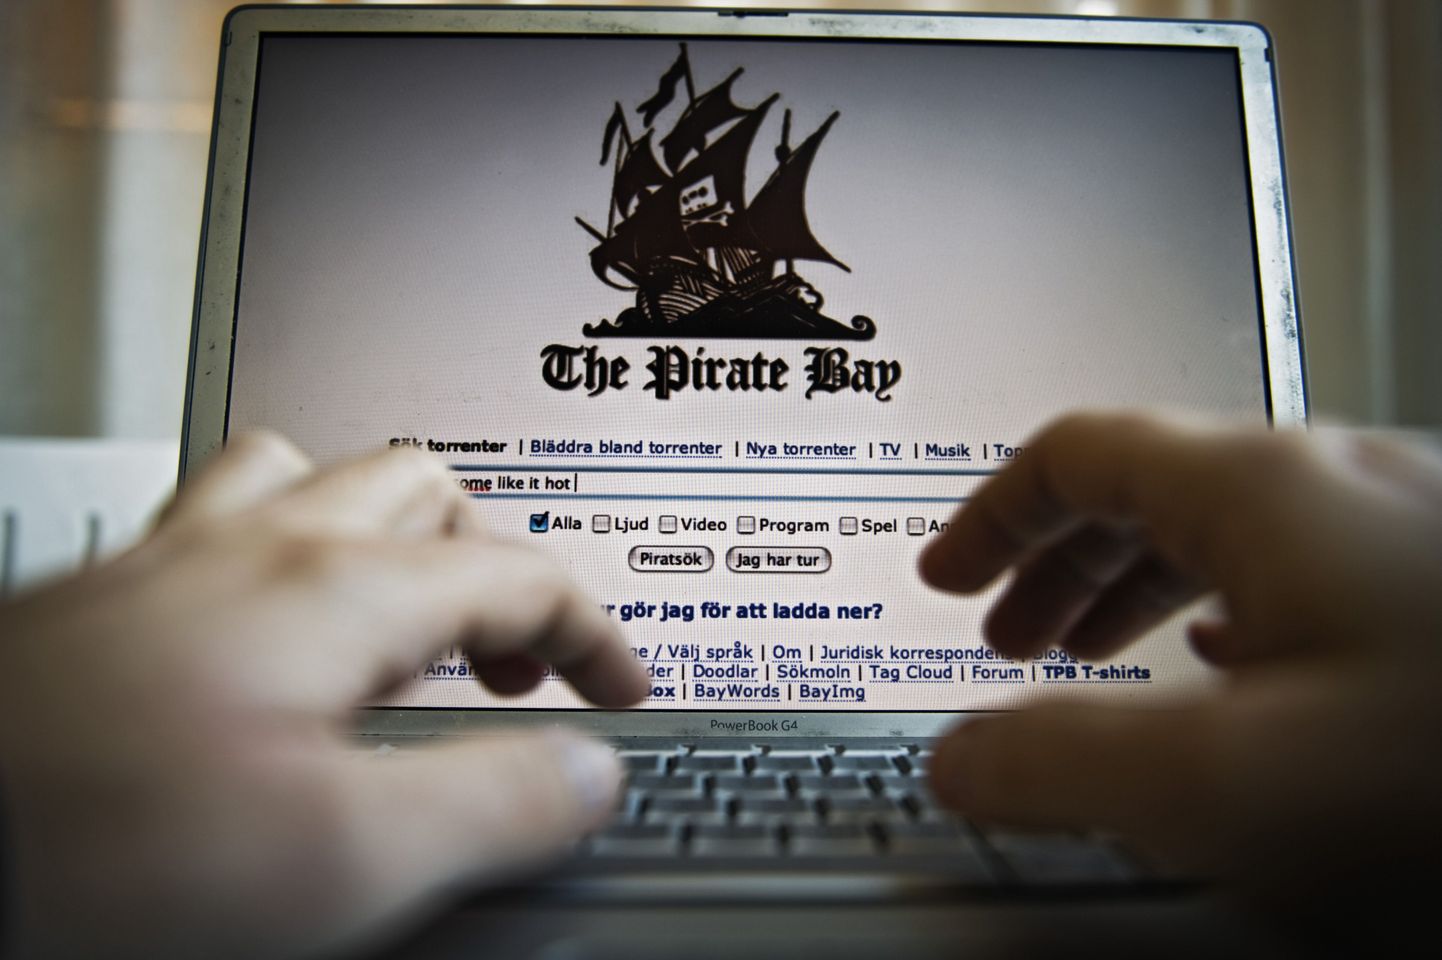 Скриншот заглавной страницы портала Pirate Bay, где размещены ссылки на различные материалы, включая пиратские копии.